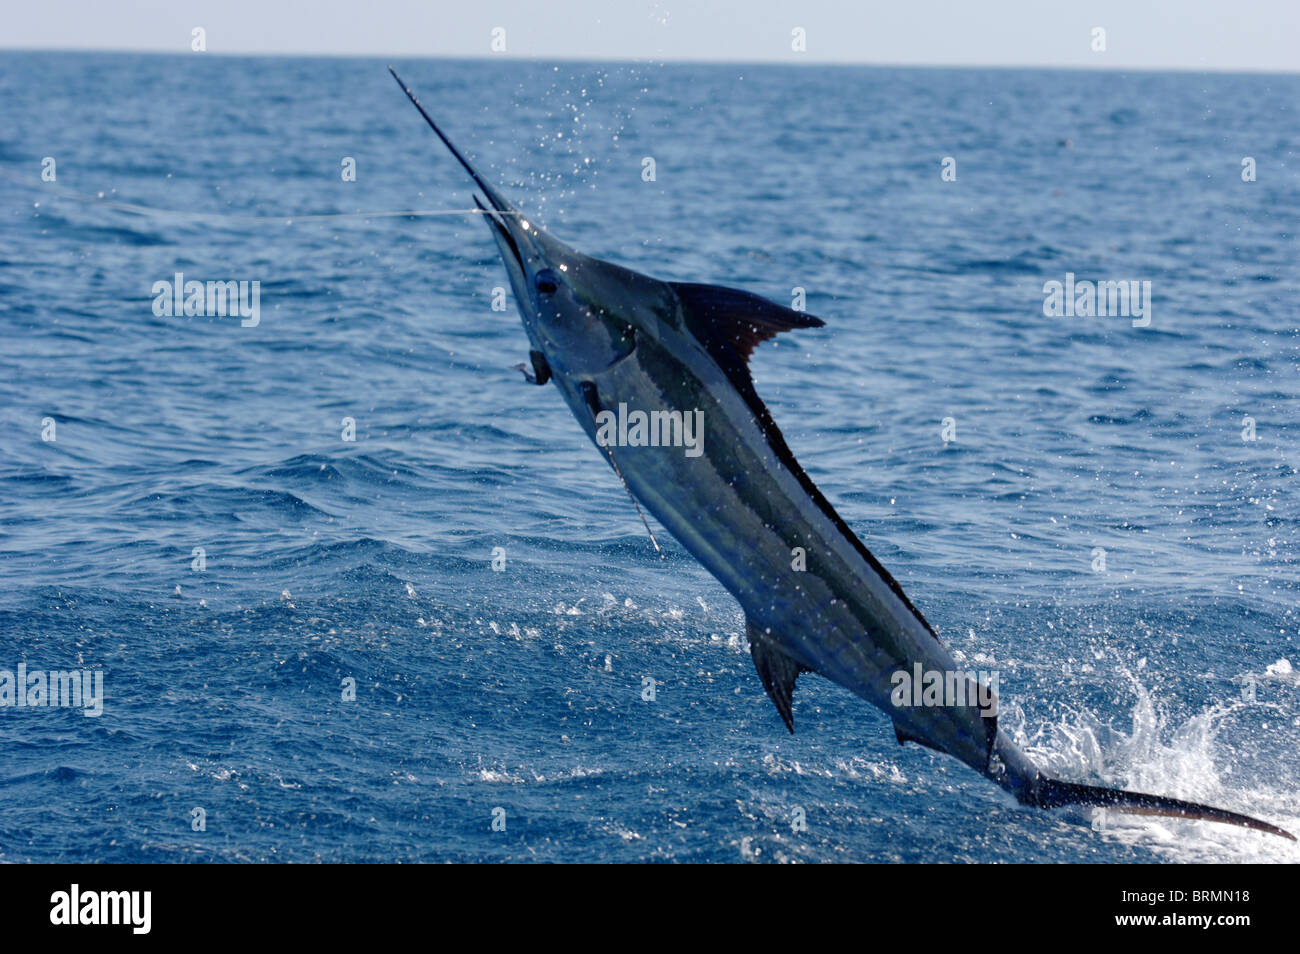 Blue Marlin pêché et sautant hors de l'océan tandis que sa queue fait glisser dans l'eau Banque D'Images